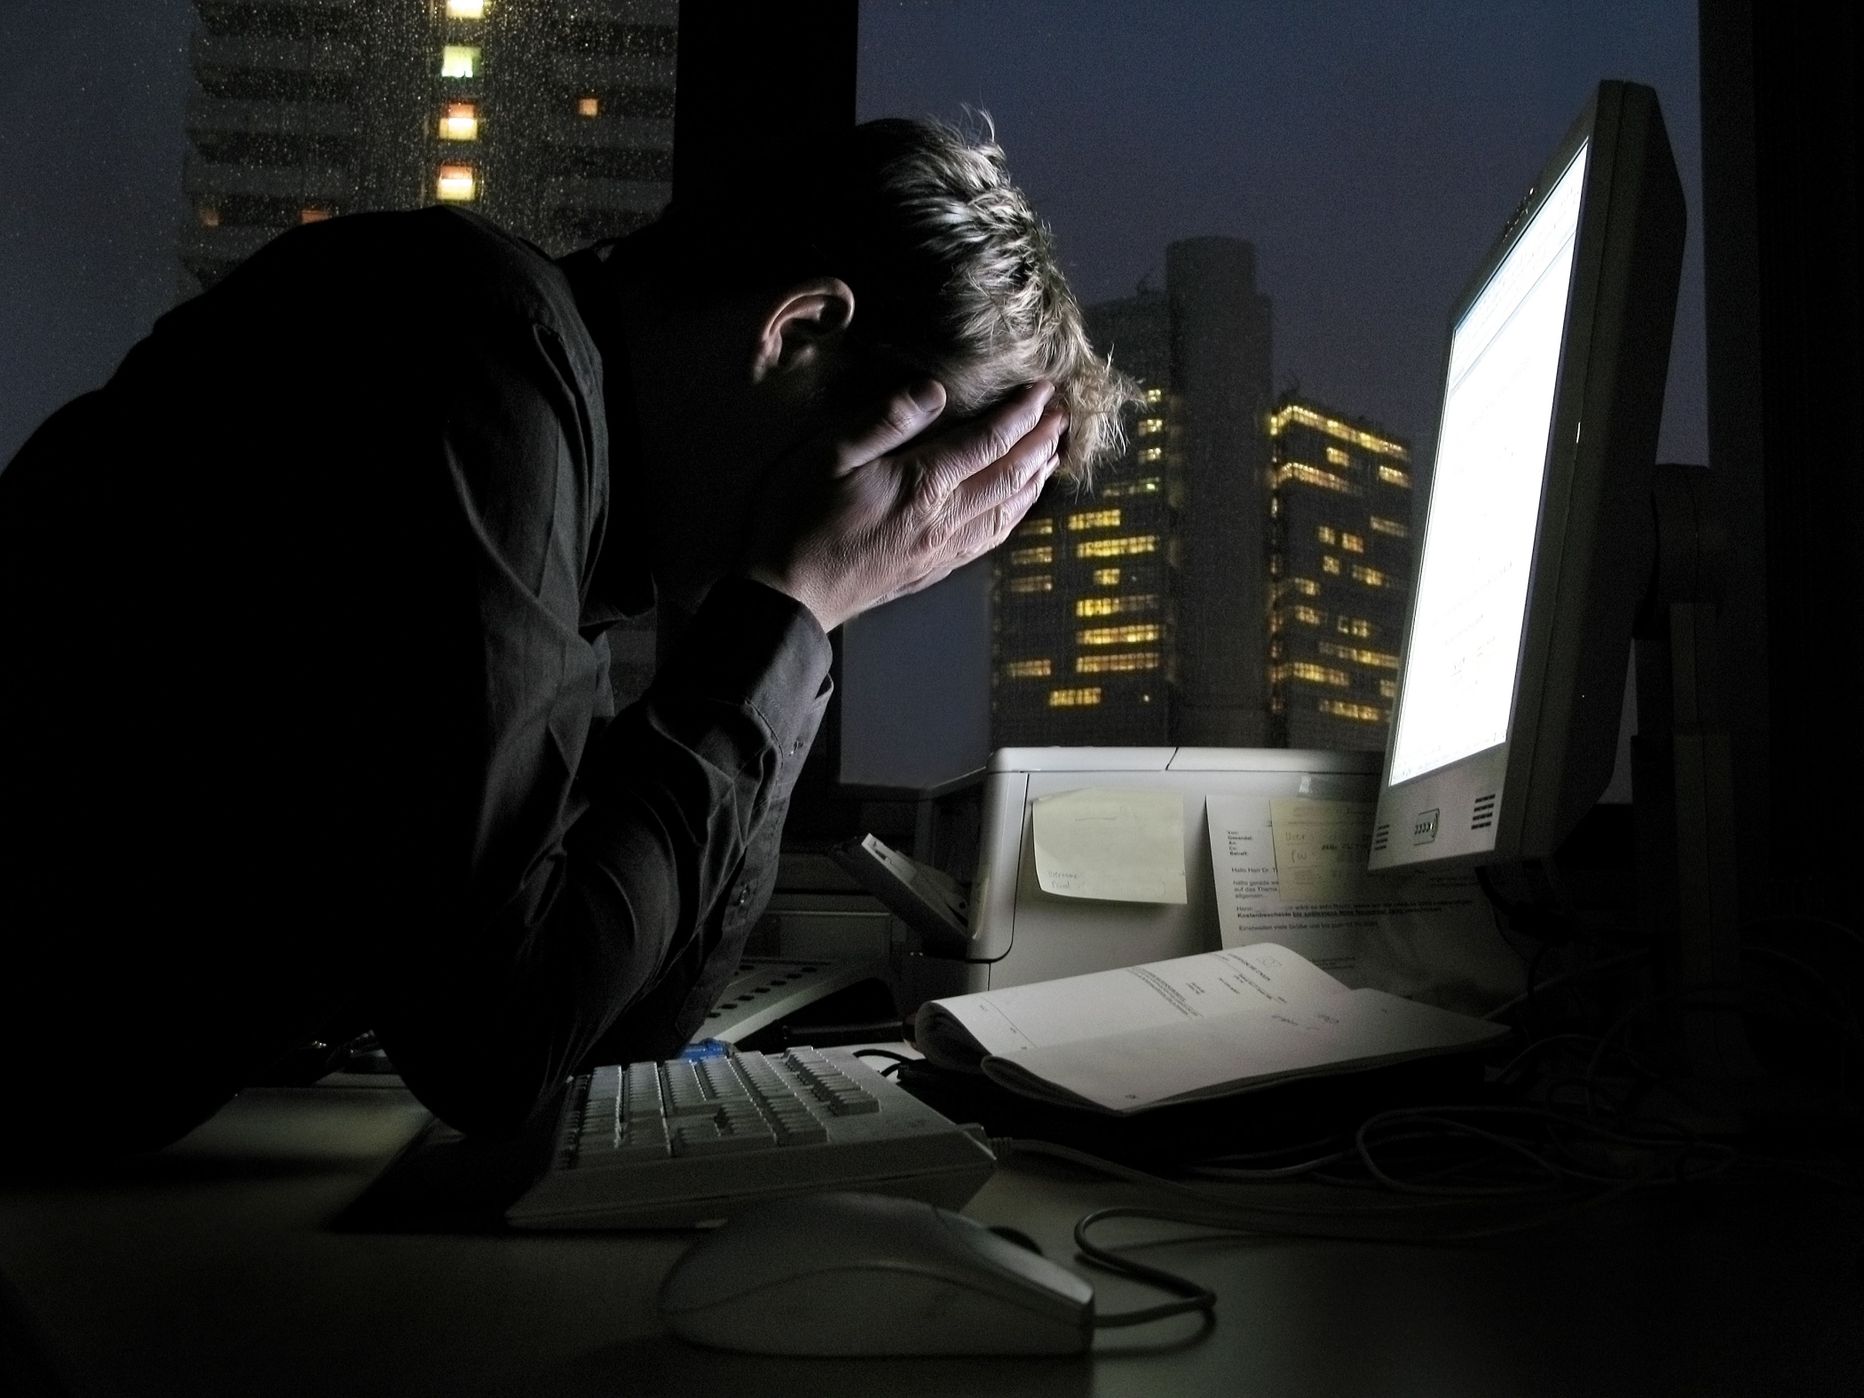 Pidev öösiti töötamine kahjustab tõsiselt tervist, sest põhjustab muutusi hormonaalsüsteemis ja ainevahetuses.